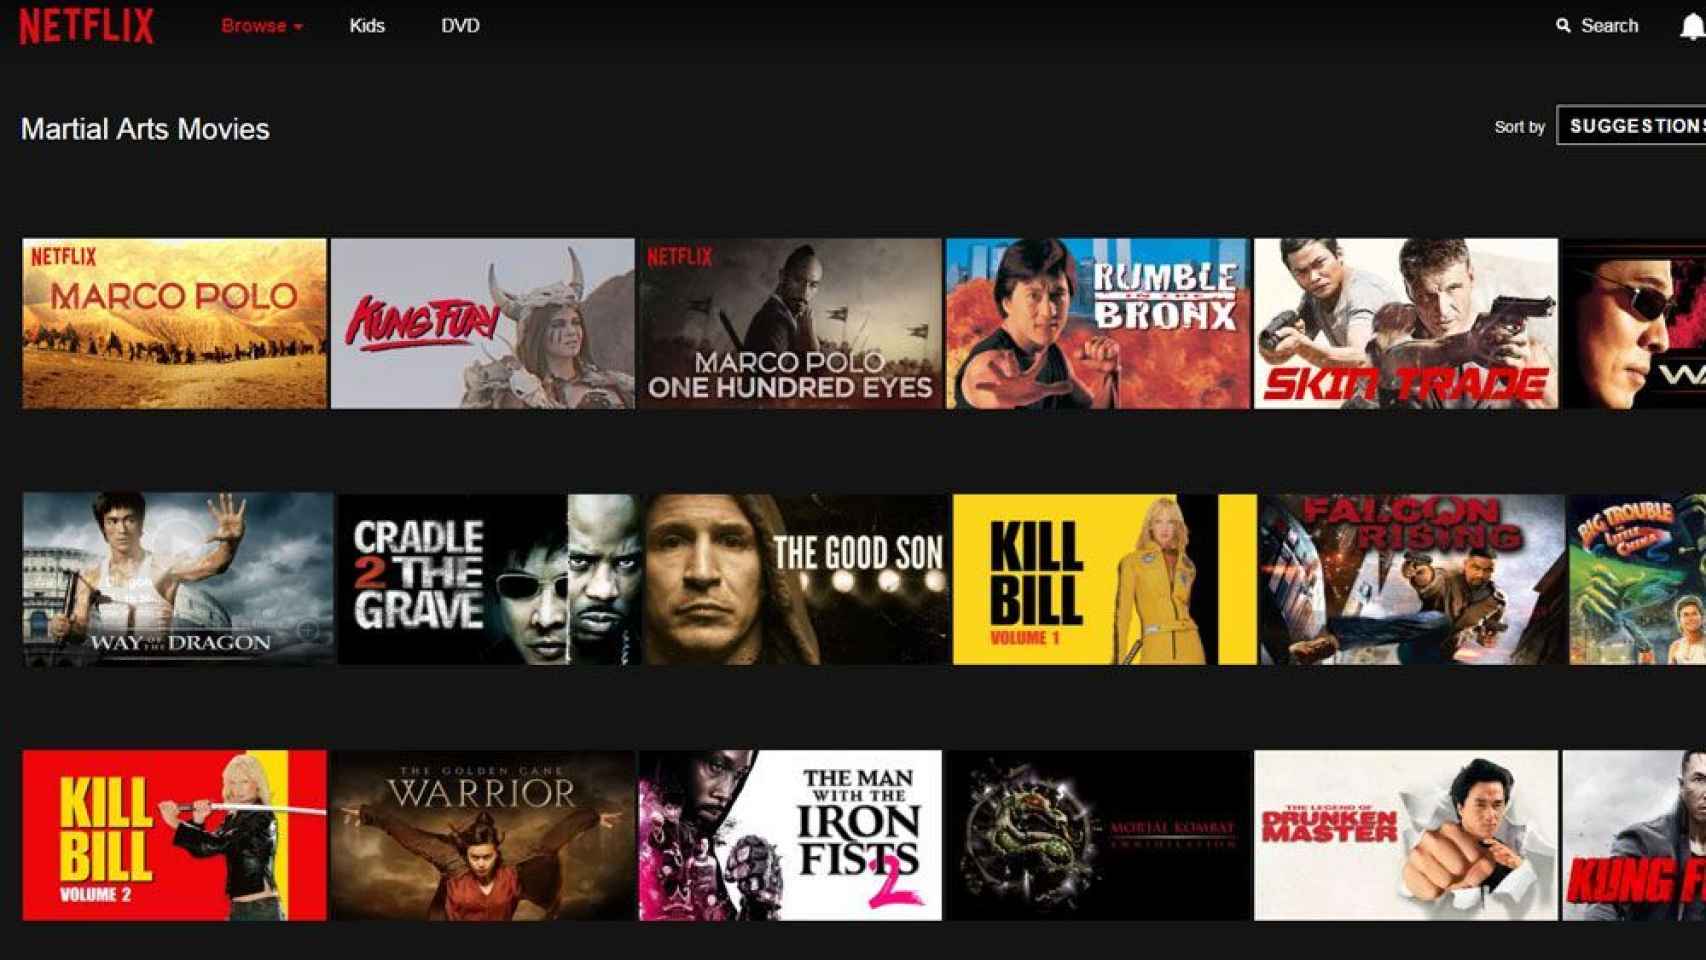 Netflix - Aquí están las categorías ocultas de Netflix para niños.